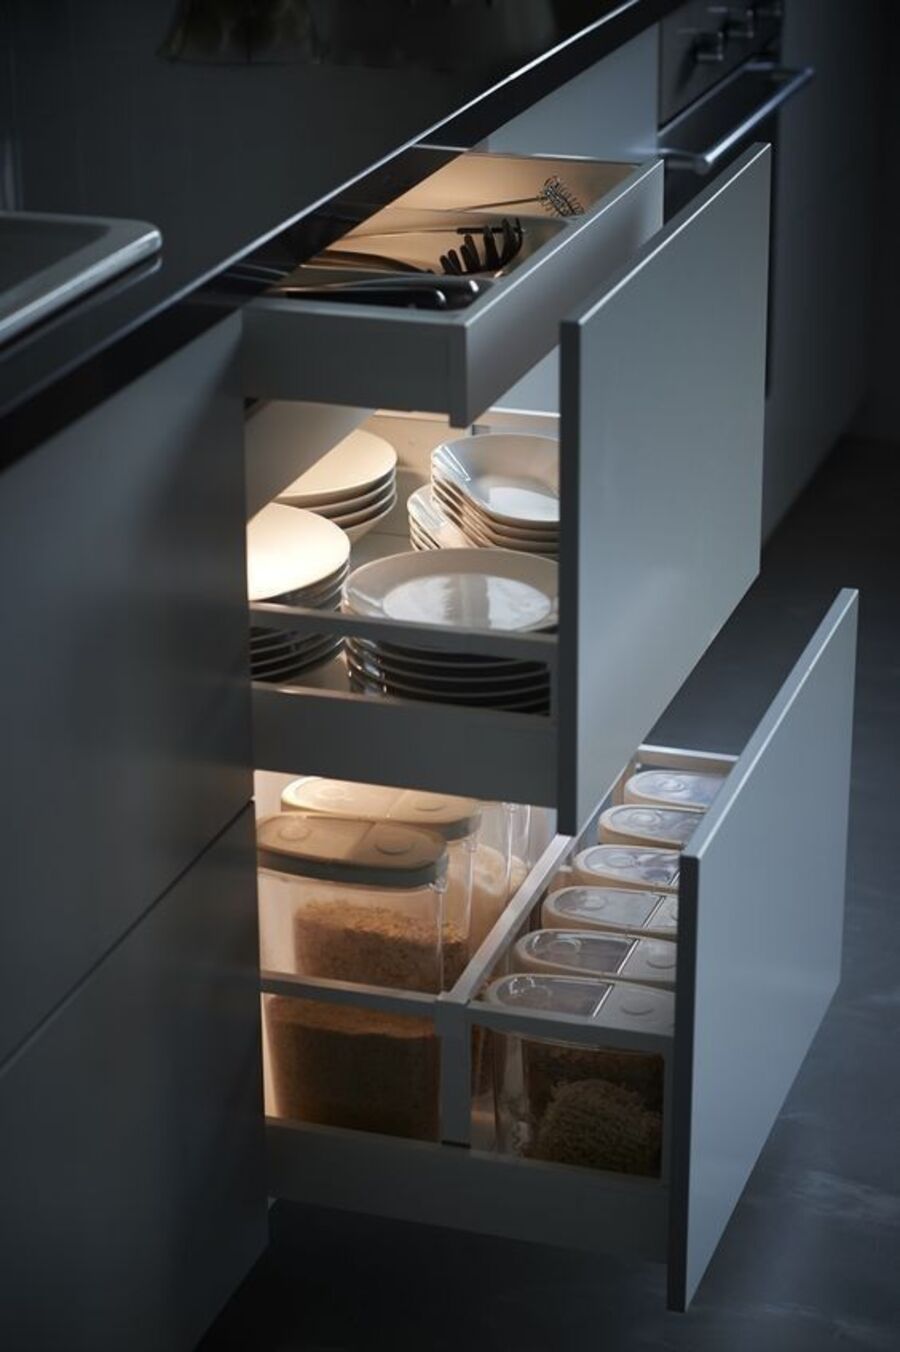 Detalle de un mueble de cocina gris con cubierta negra, cuyos cajones están semiabiertos y dejan ver diferentes contenedores, platos y utensilios. En cada cajón hay una luz que los ilumina.